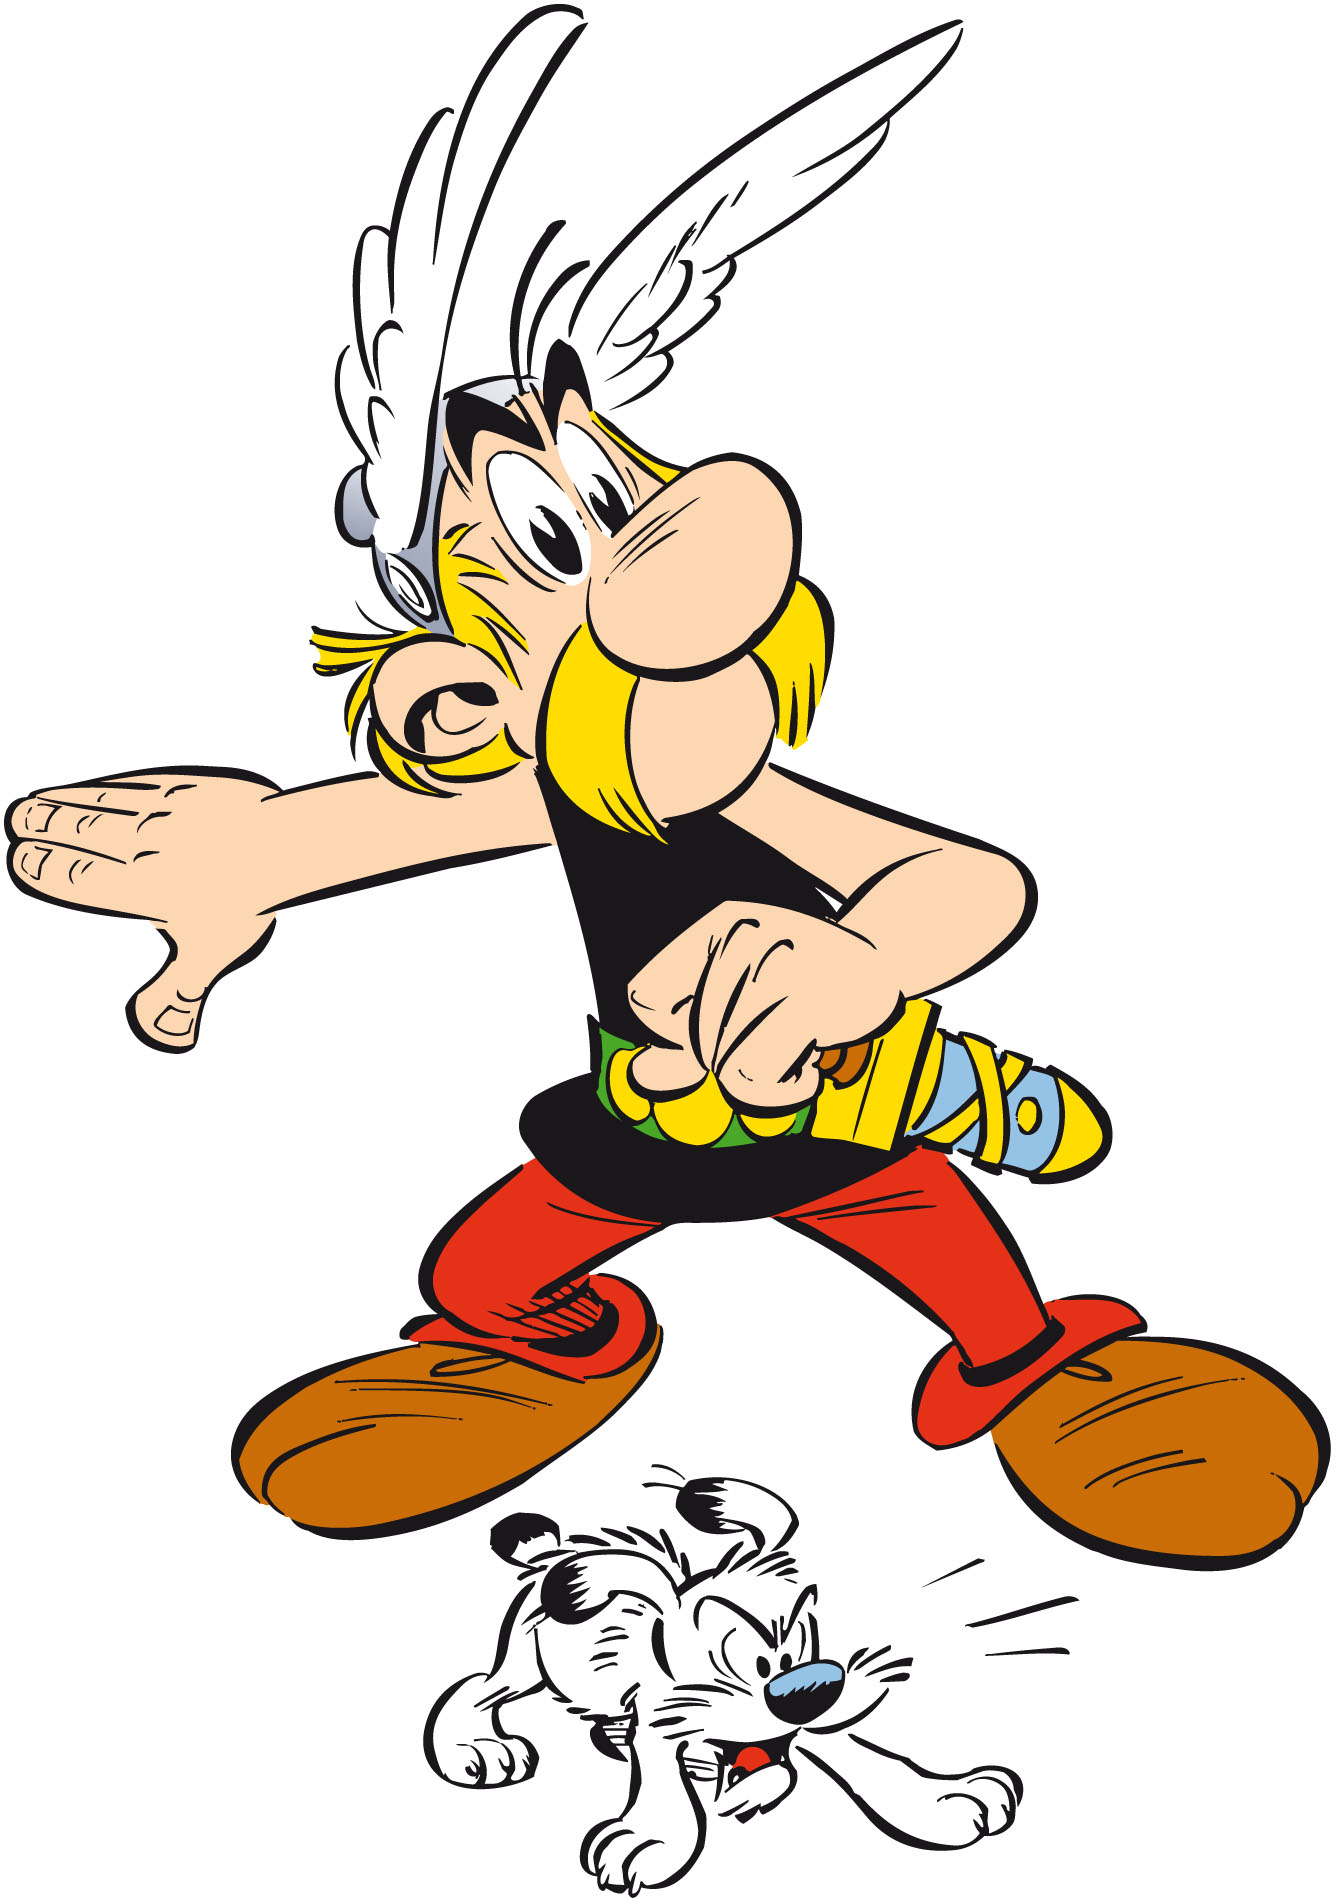 asterix-detoure_5daf1a03dddf4.jpg